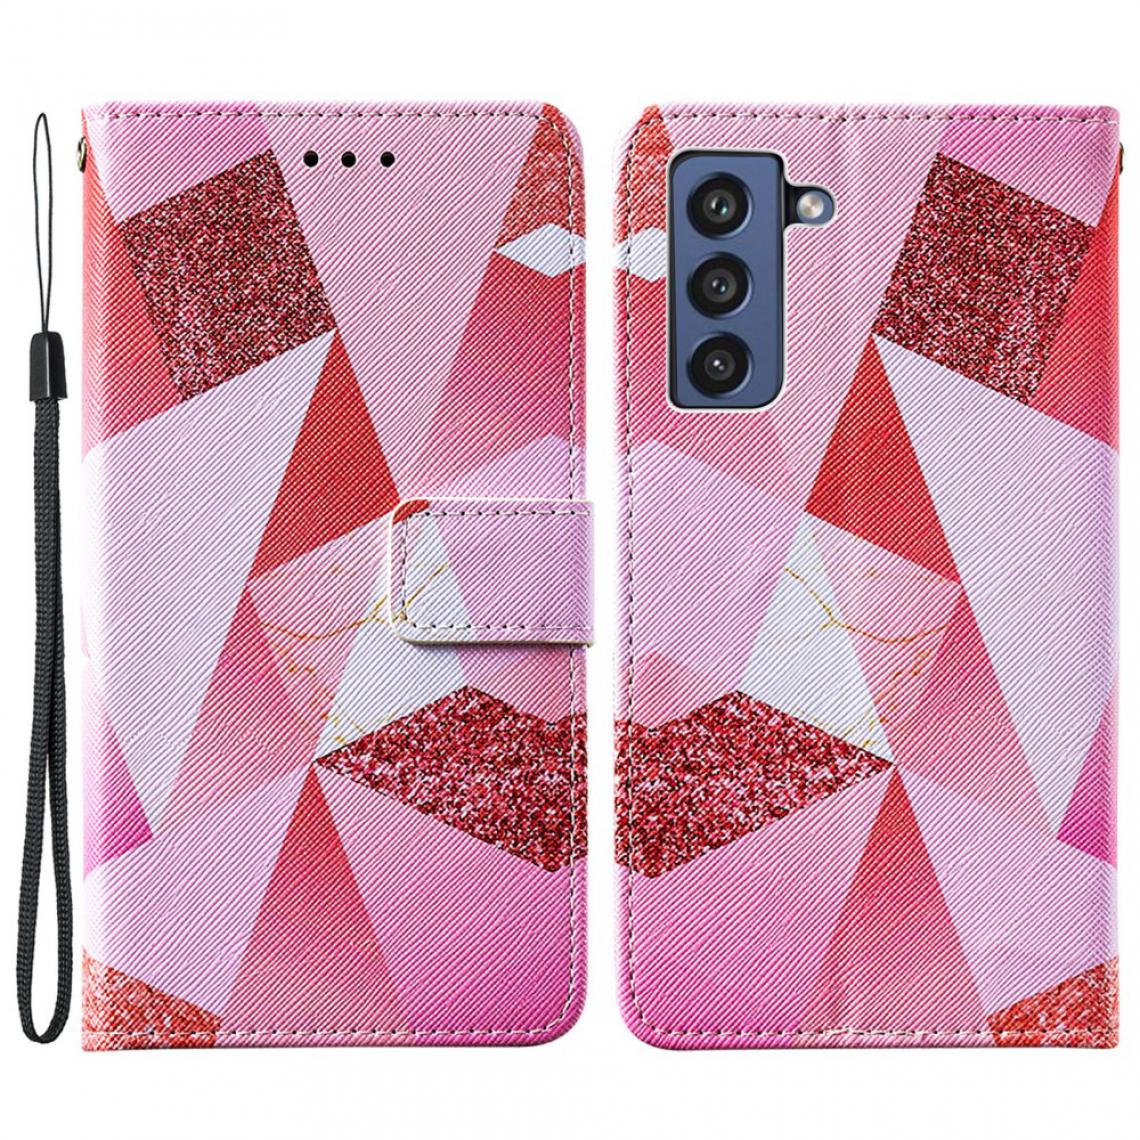 Other - Etui en PU Impression de motifs de texture croisée avec support Losange rose pour votre Samsung Galaxy S21 FE/S21 Fan Edition - Coque, étui smartphone